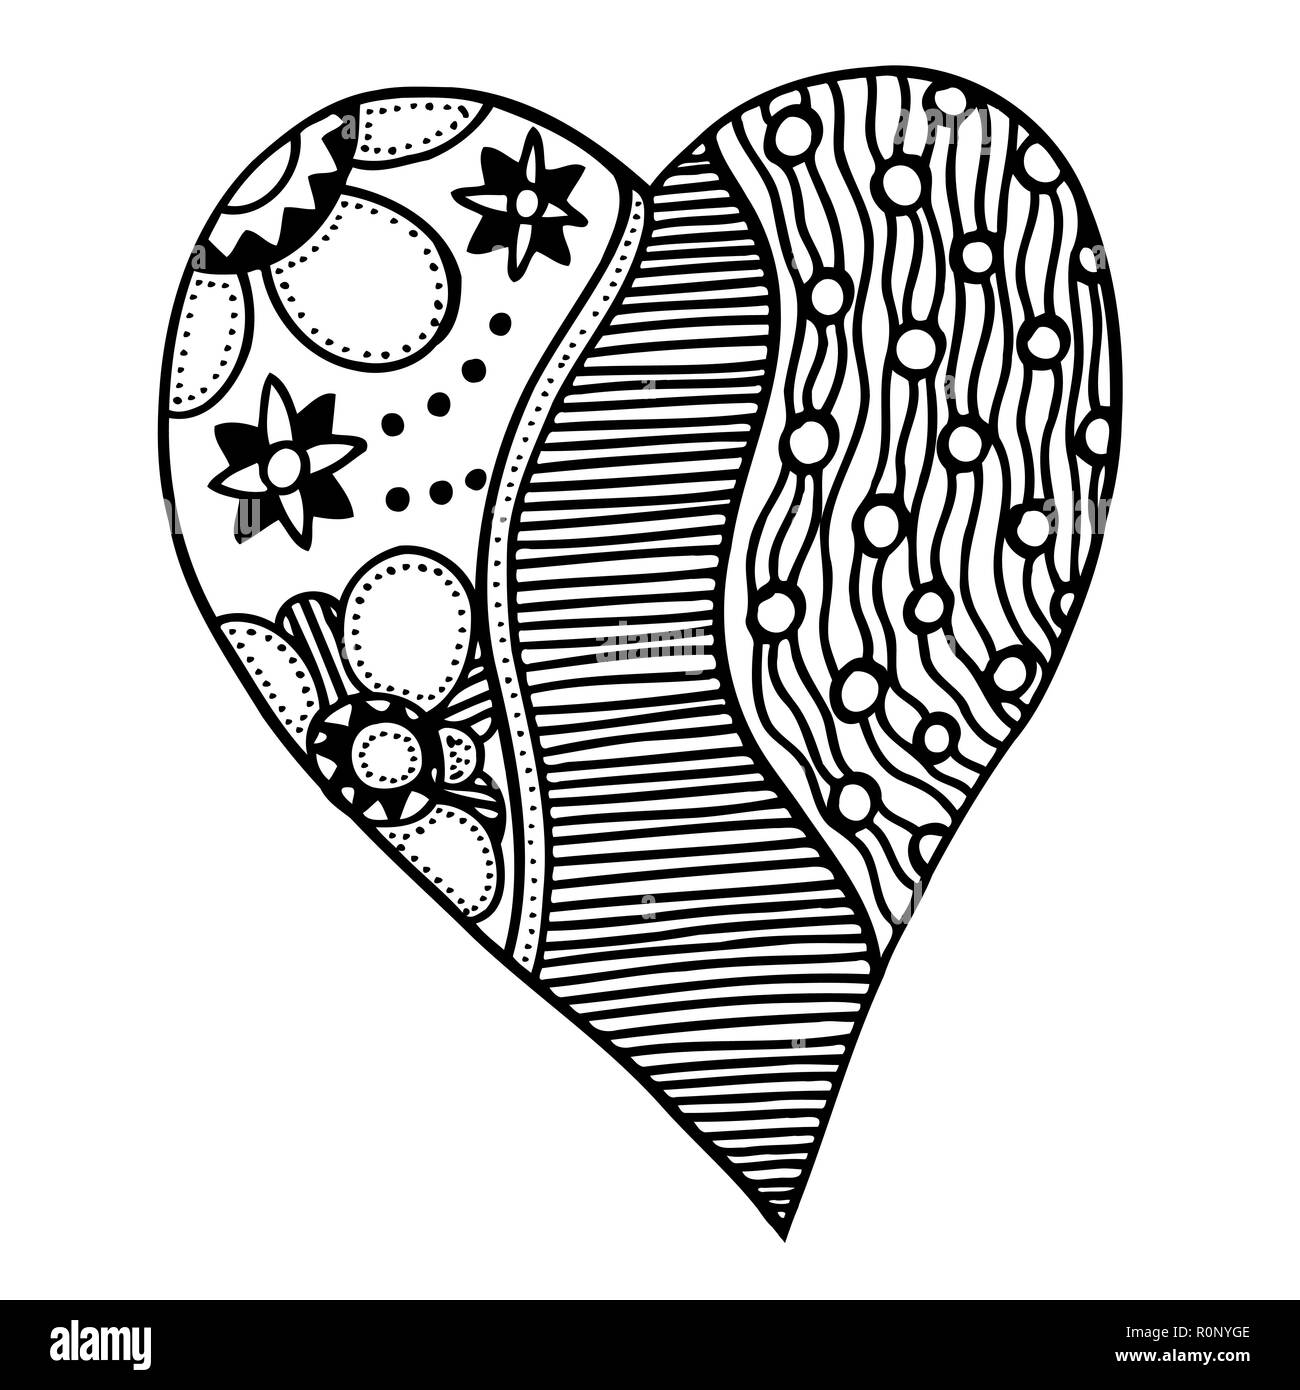 easy heart zentangle patterns